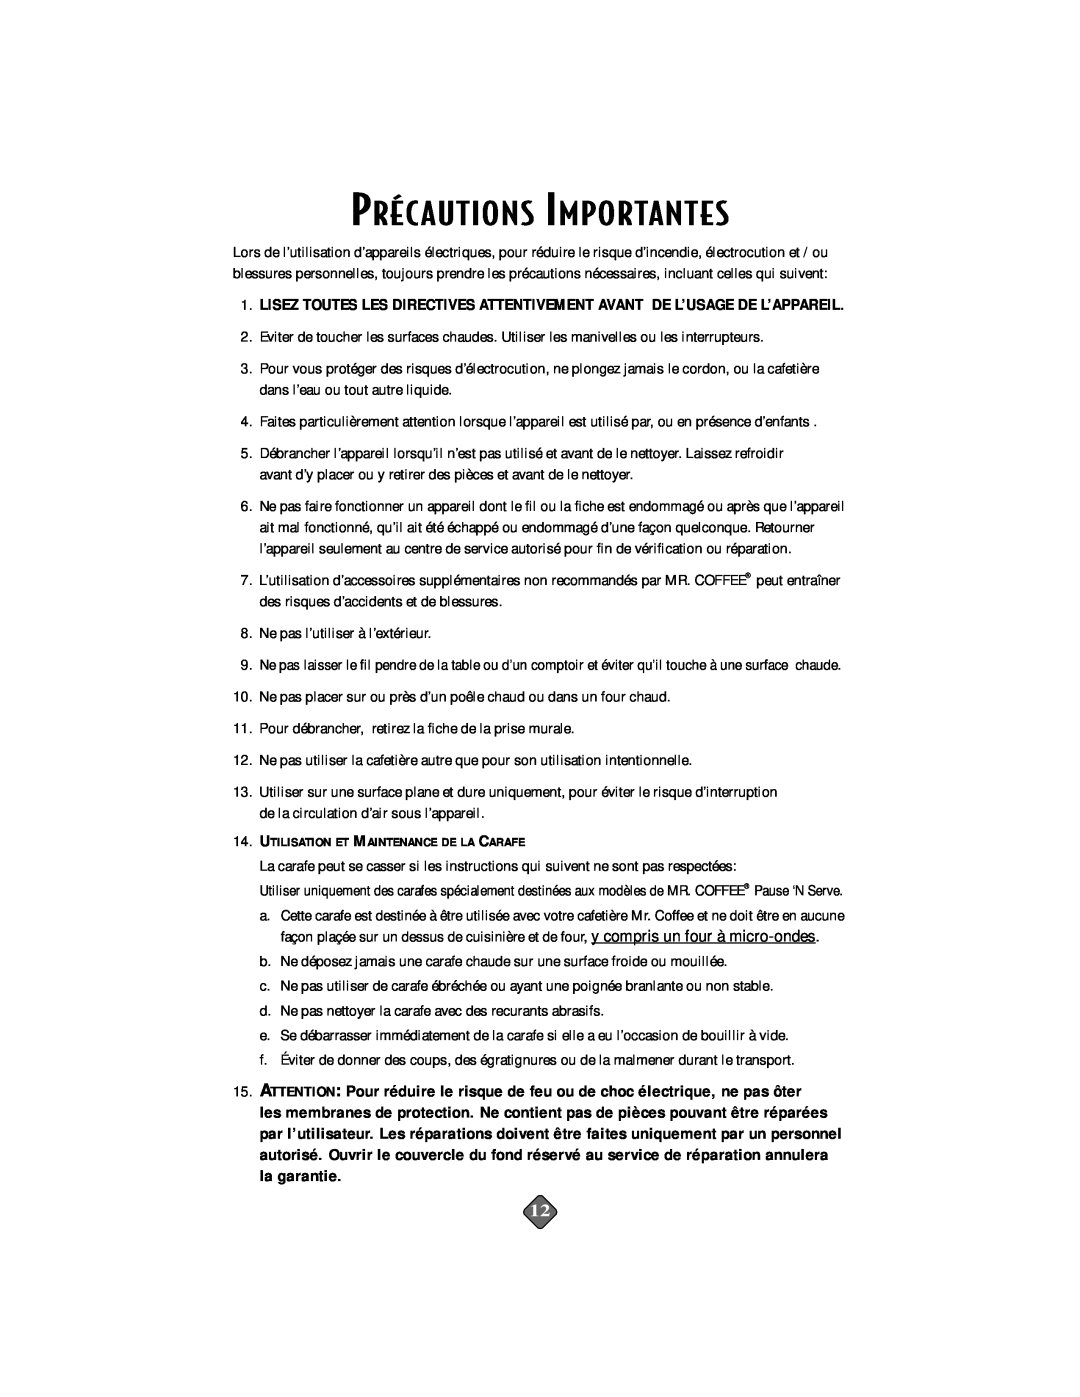 Mr. Coffee PRX33, PRX28, PR14, PR15, PR26, PR16, PR17, PRX23, PR27, PRX29 instruction manual Préc Autions Importantes 